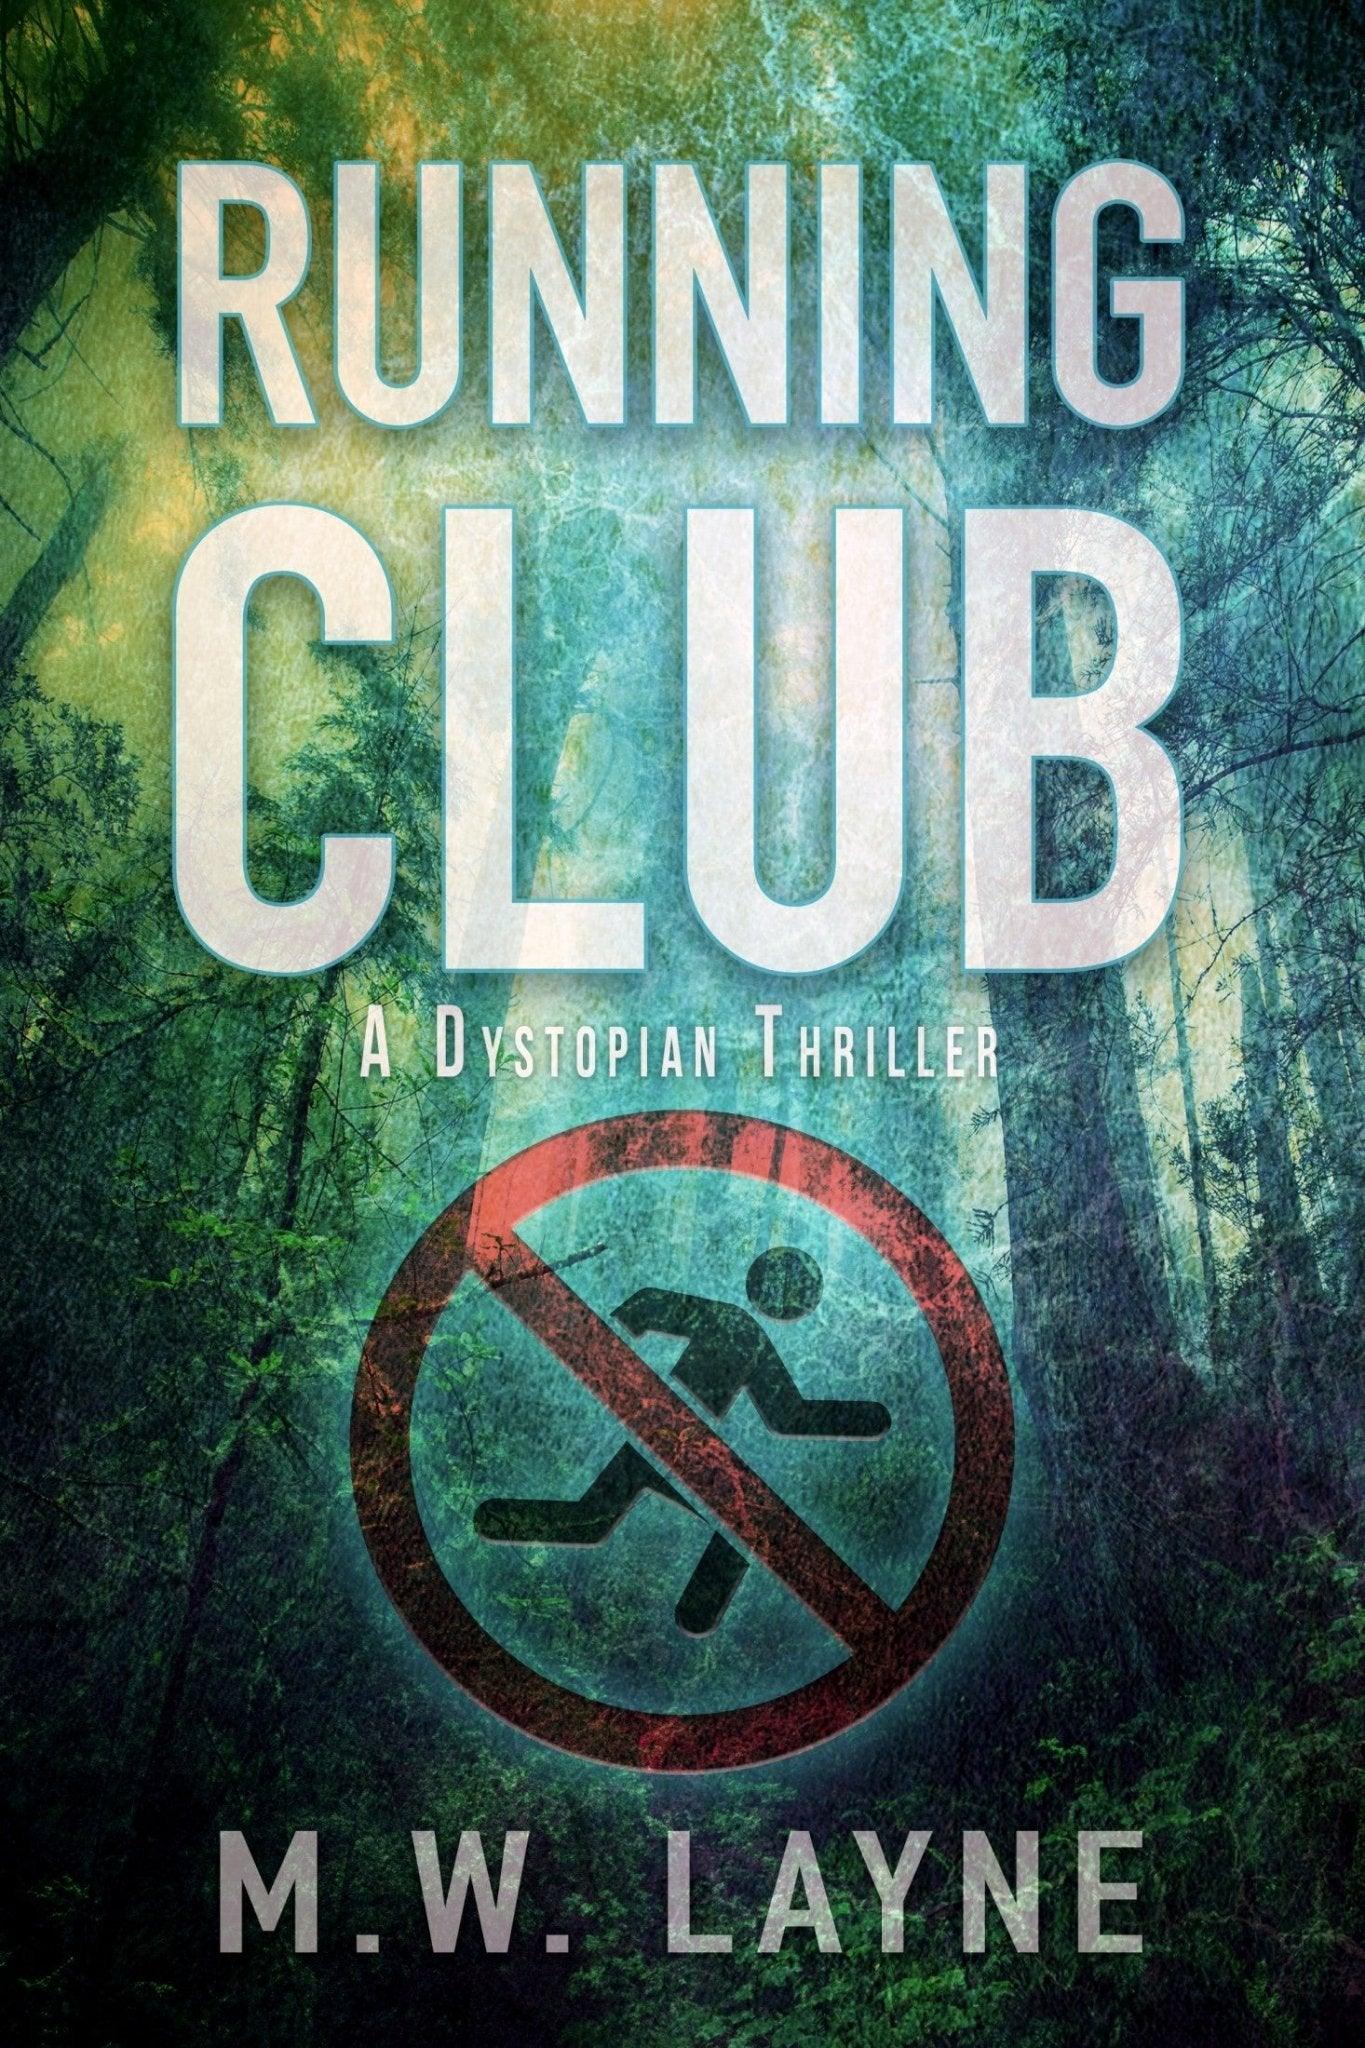 Running Club - Writer Layne Publishing